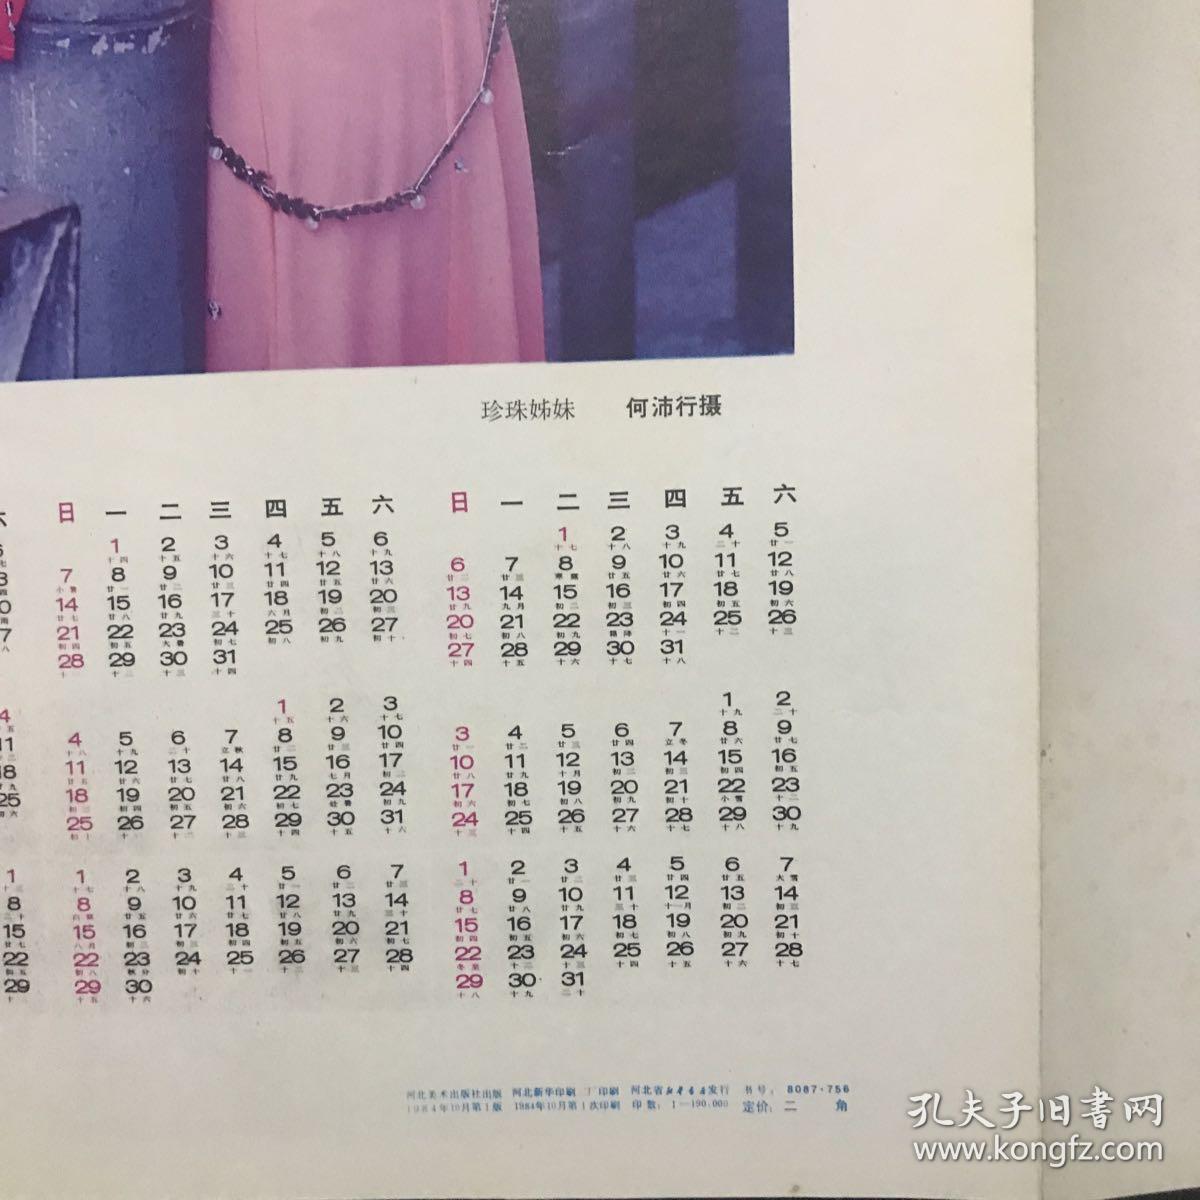 1985年摄影年历《珍珠姊妹》2张连体